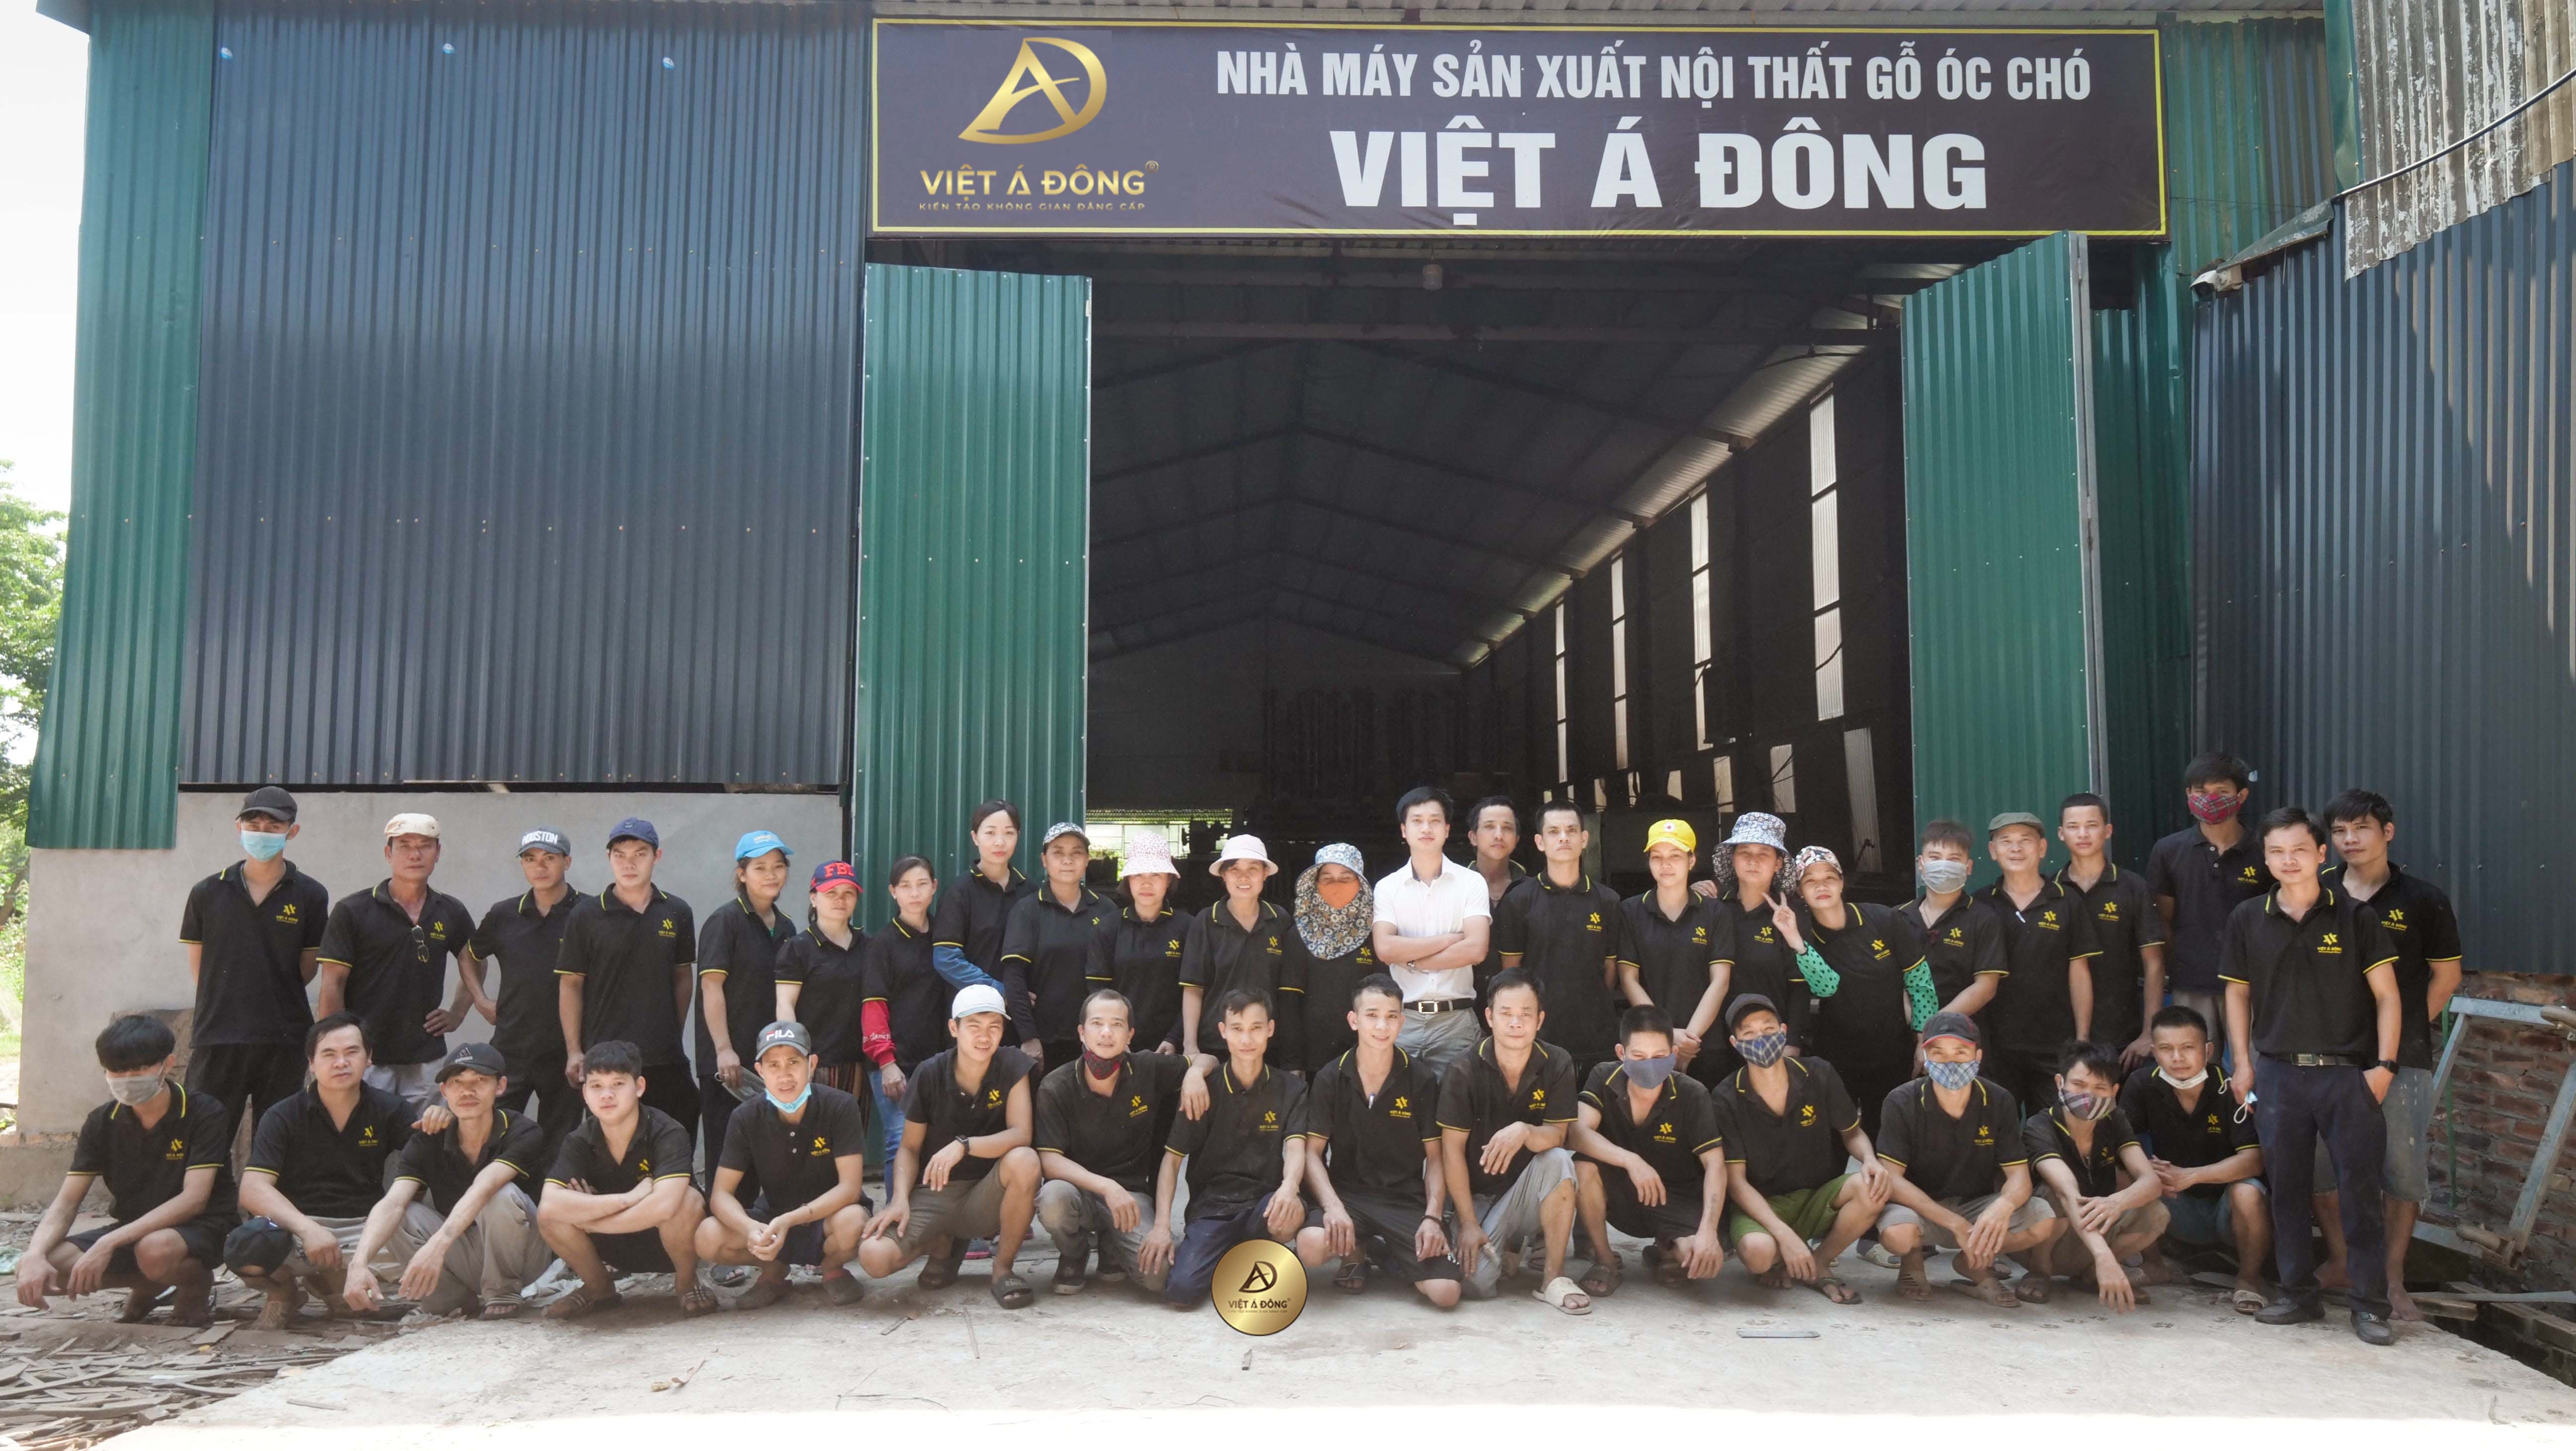 Nhà máy sản xuất nội thất gỗ óc chó Việt Á Đông – Uy tín – Chuyên nghiệp